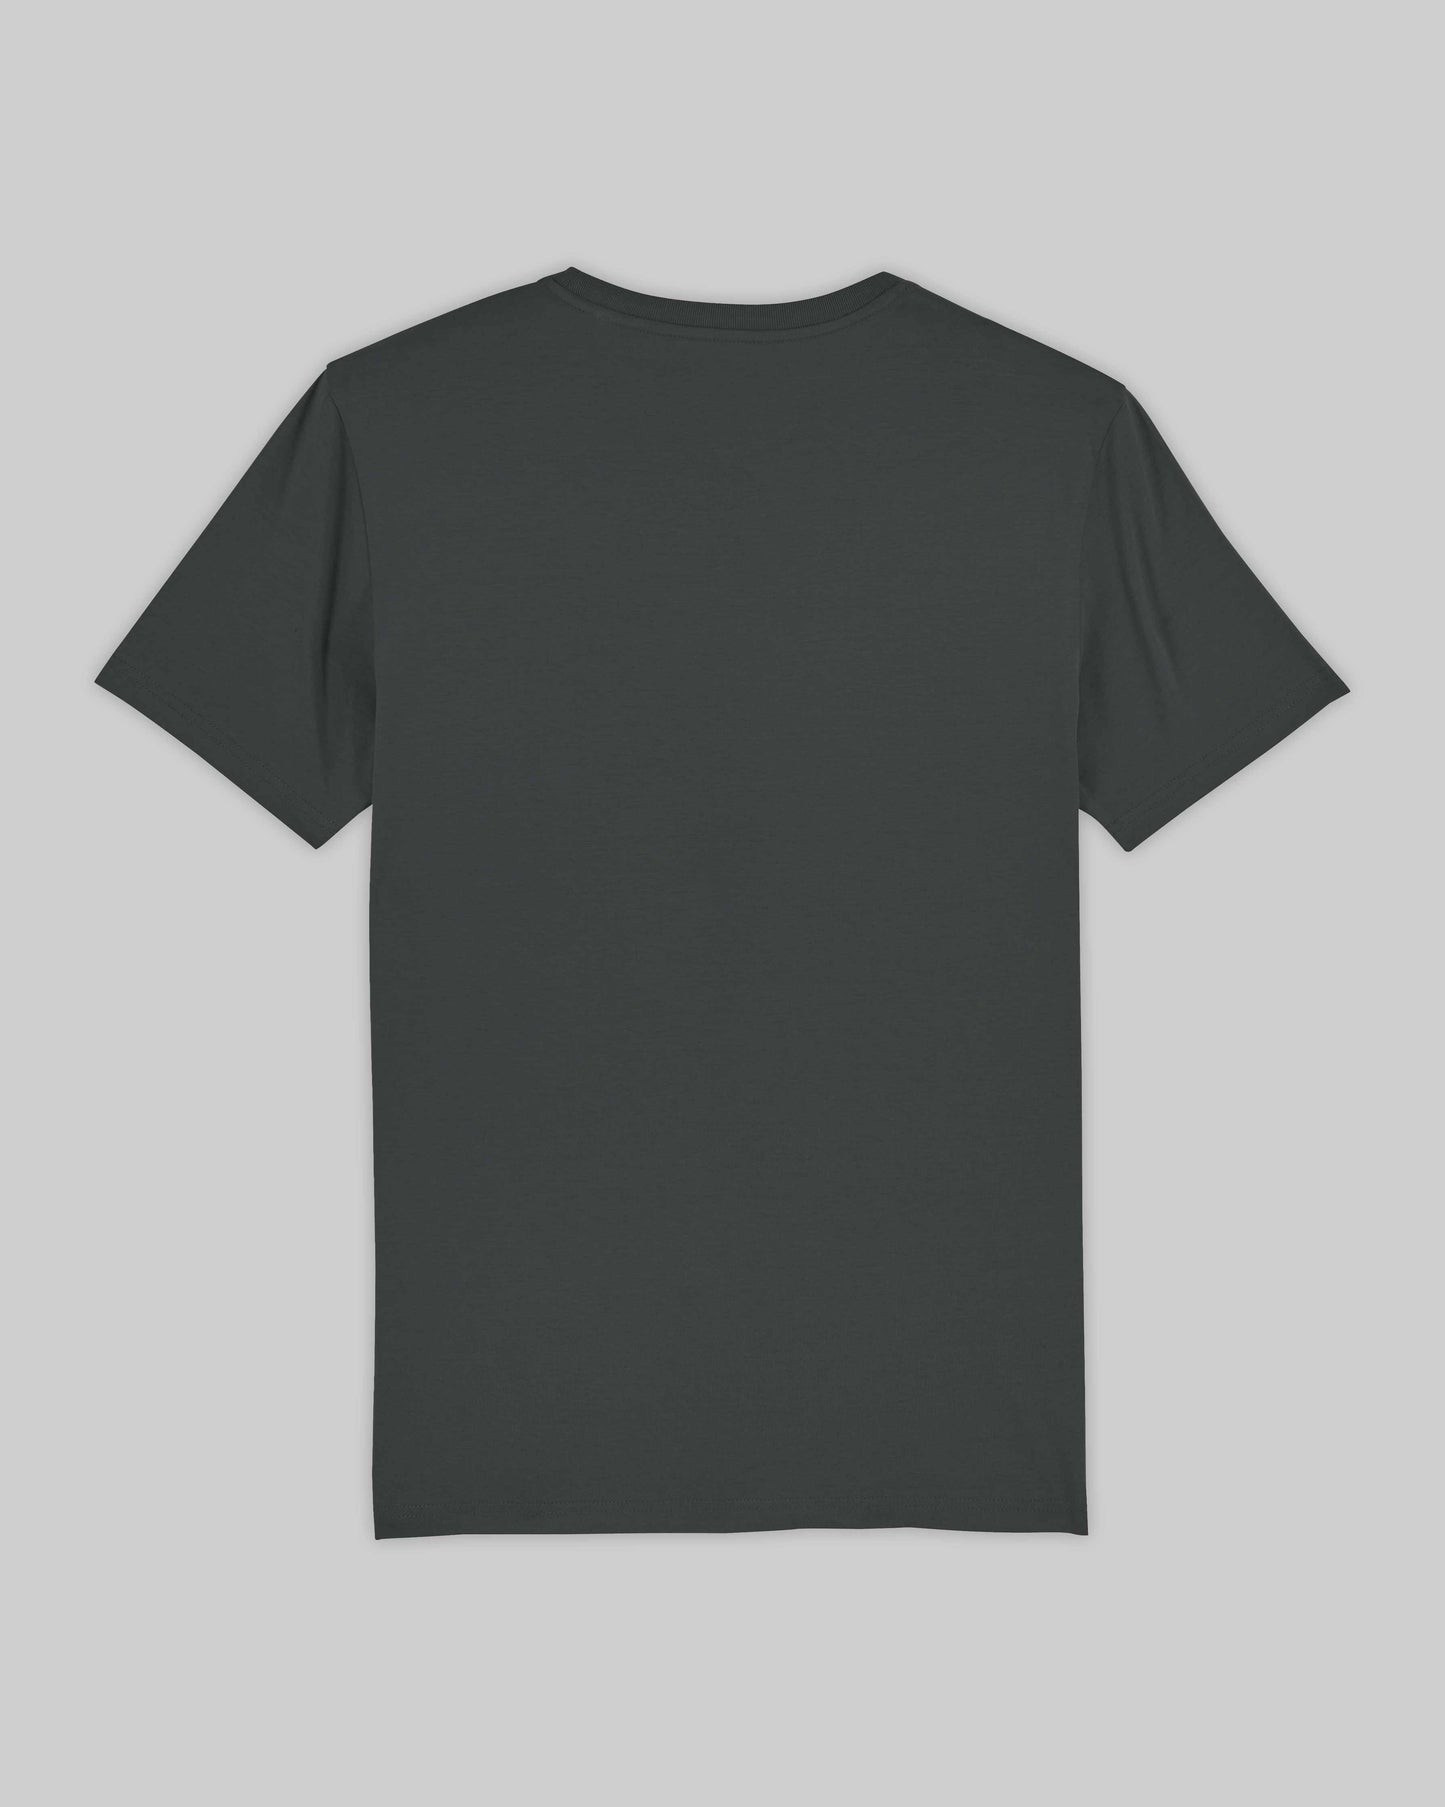 EINHORST® unisex Organic Shirt in "Anthracite" mit dem Motiv "queer Regenbogen" in der Kombination schwarzer Regenbogen mit schwarzer Schrift, Bild von Shirt von hinten